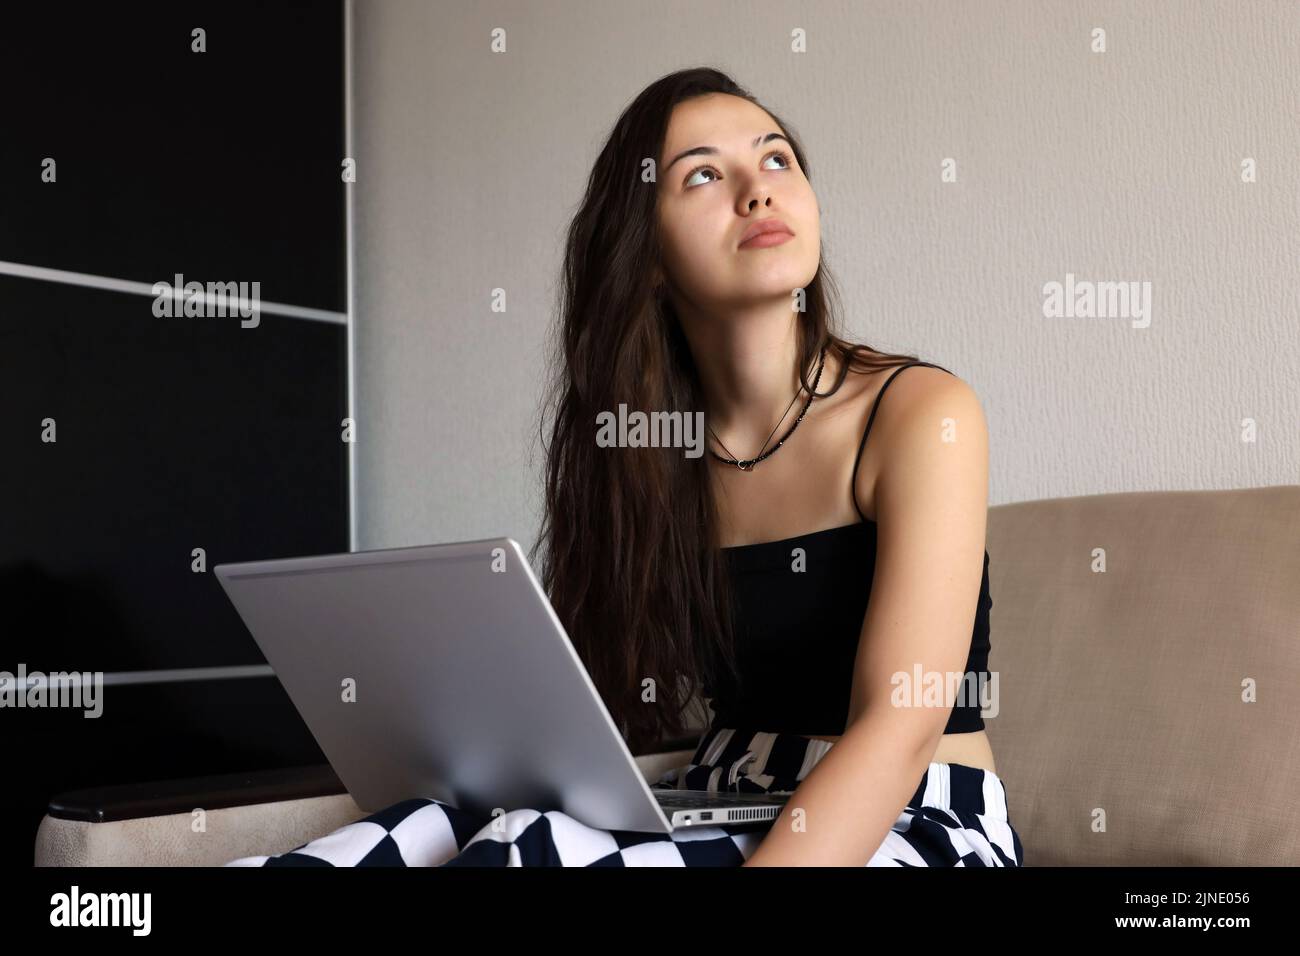 Bonita chica joven con el pelo largo con tapa negra sentada con el ordenador portátil en el sofá y mirando hacia arriba. Concepto de inspiración en el trabajo, el estudio o el ocio Foto de stock